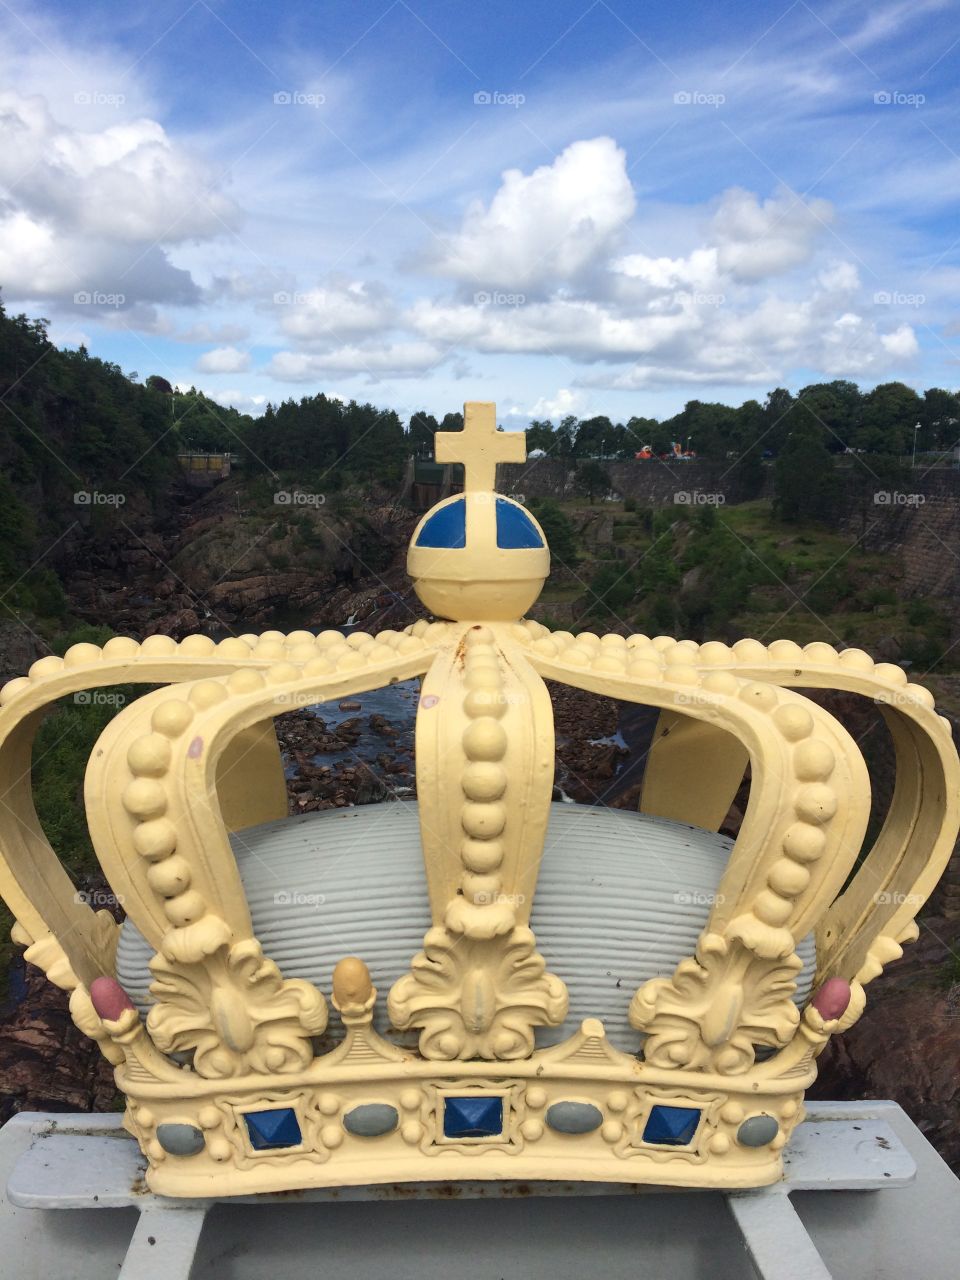 A crown on Oskarsbridge in Trollhättan, Sweden. 